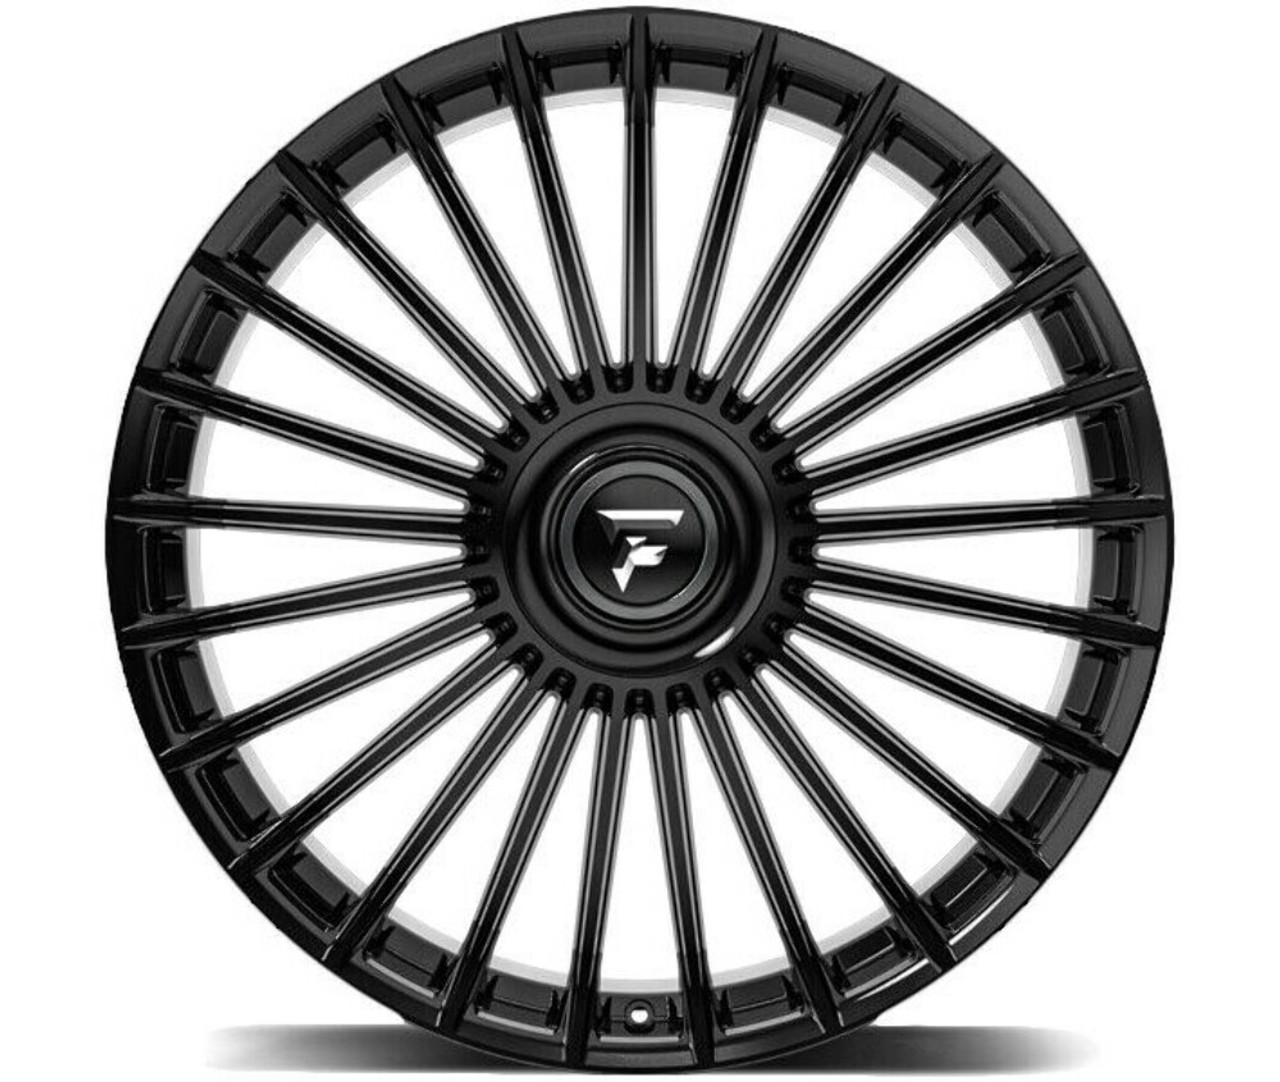 Set 4 22" Fittipaldi Street FS370B Gloss Black 22x9.5 Wheels 5x108 5x4.5 38mm